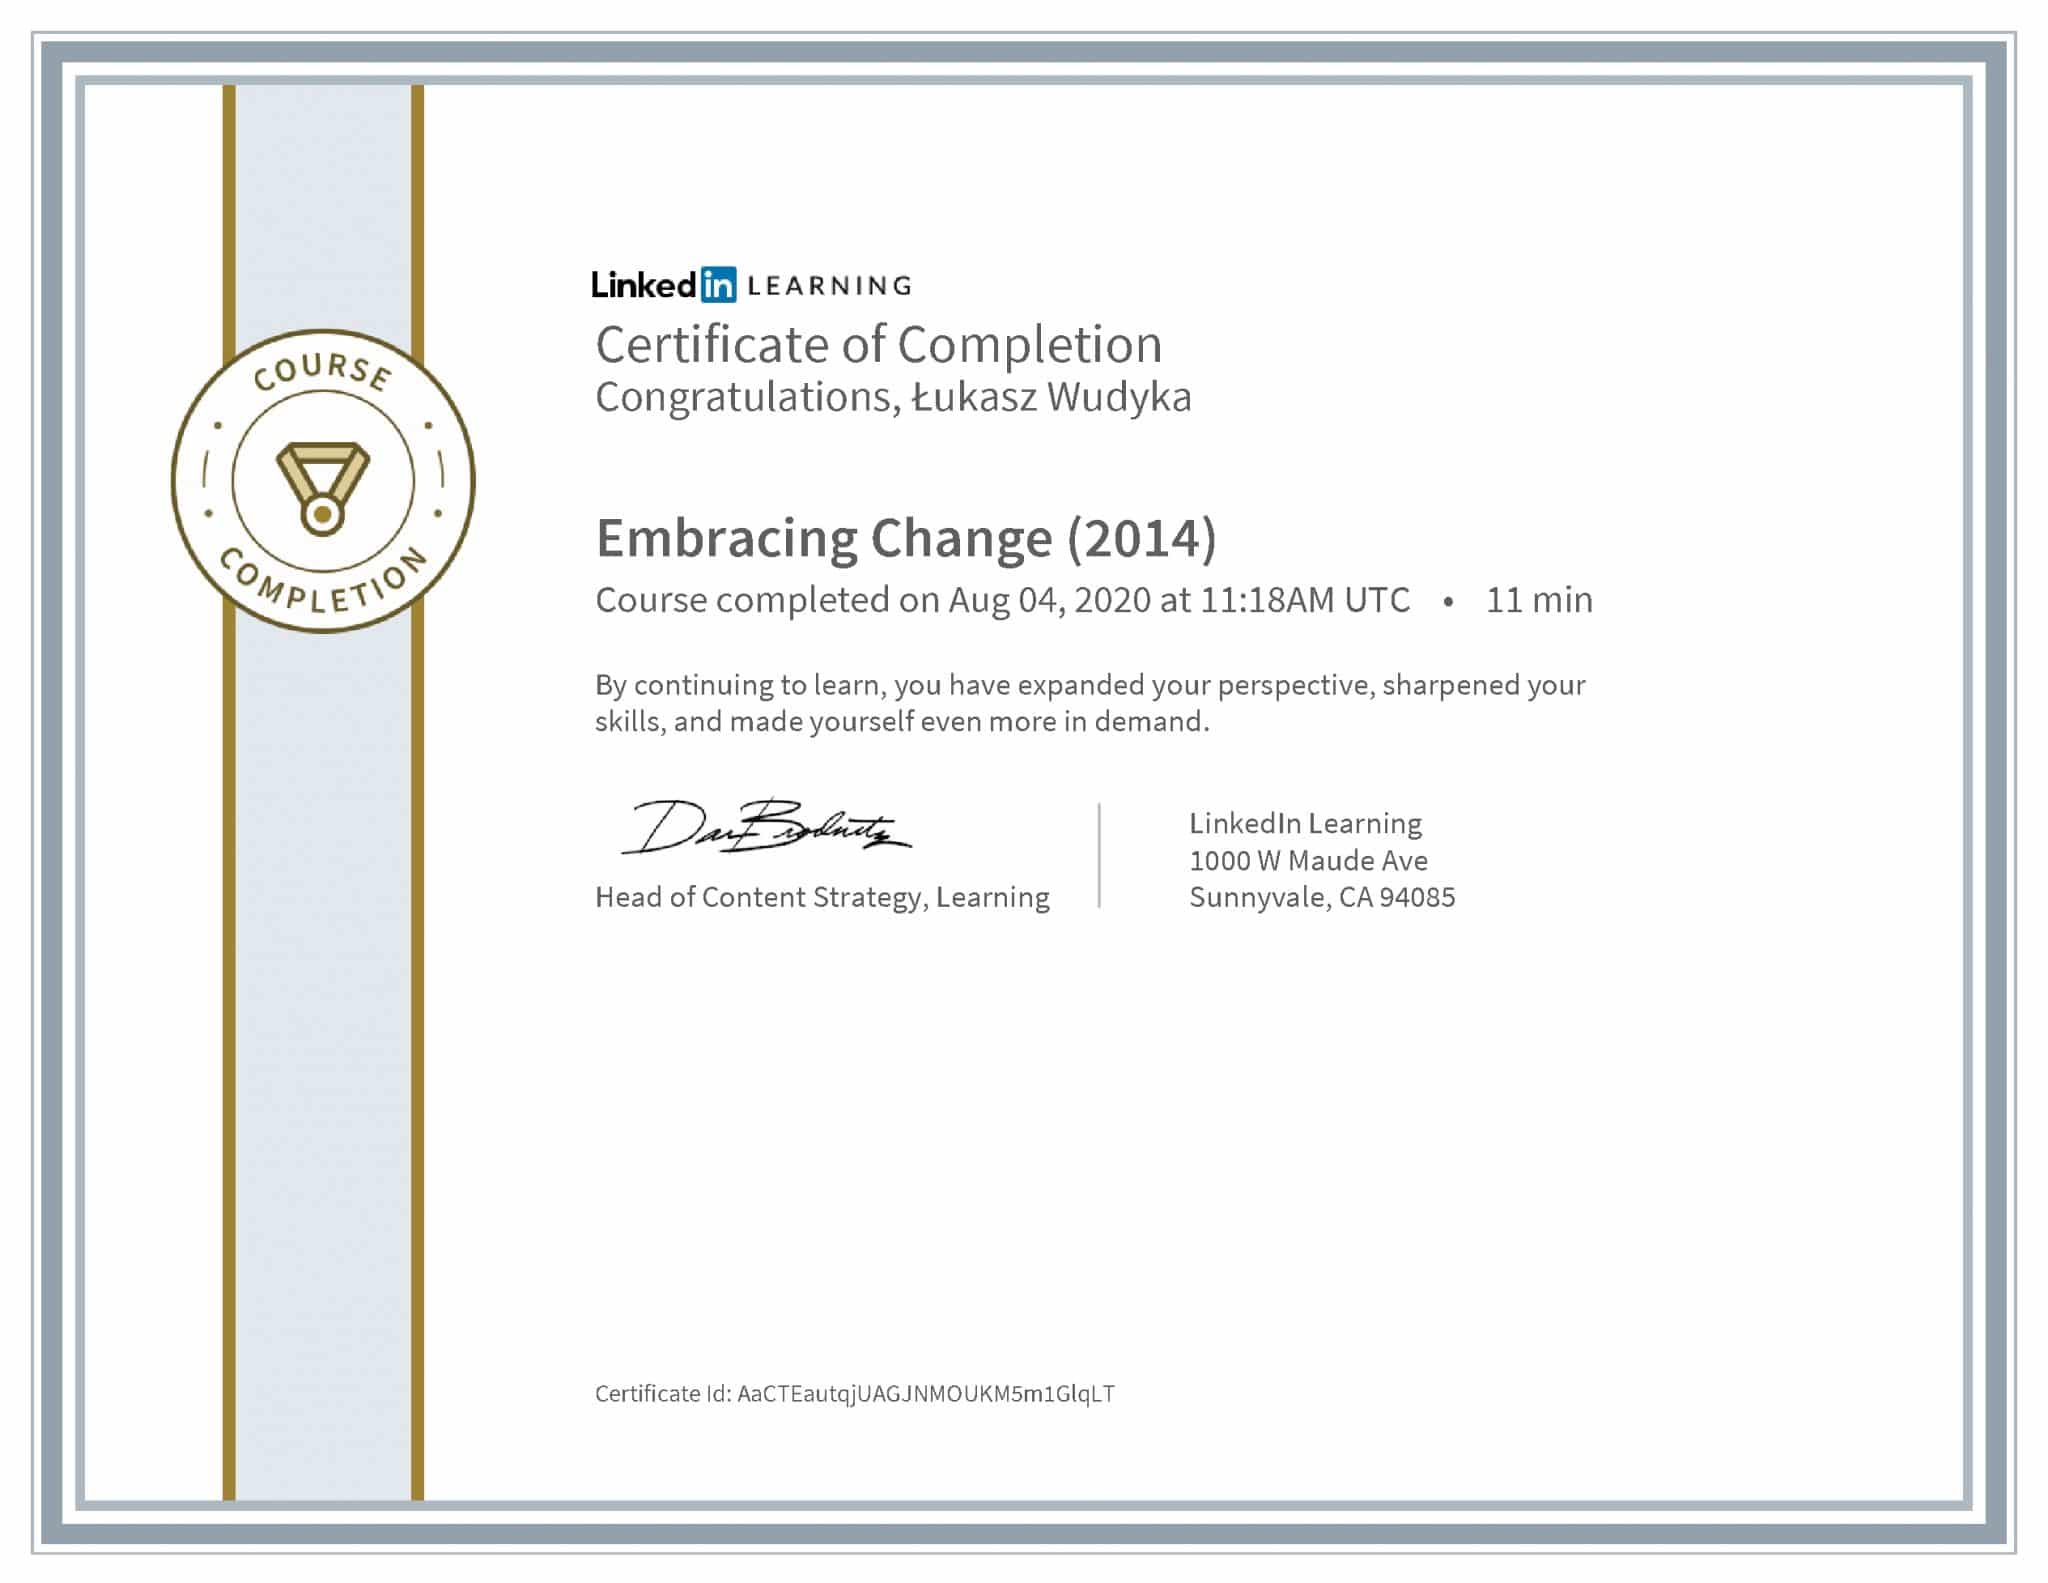 Łukasz Wudyka certyfikat LinkedIn Embracing Change (2014)